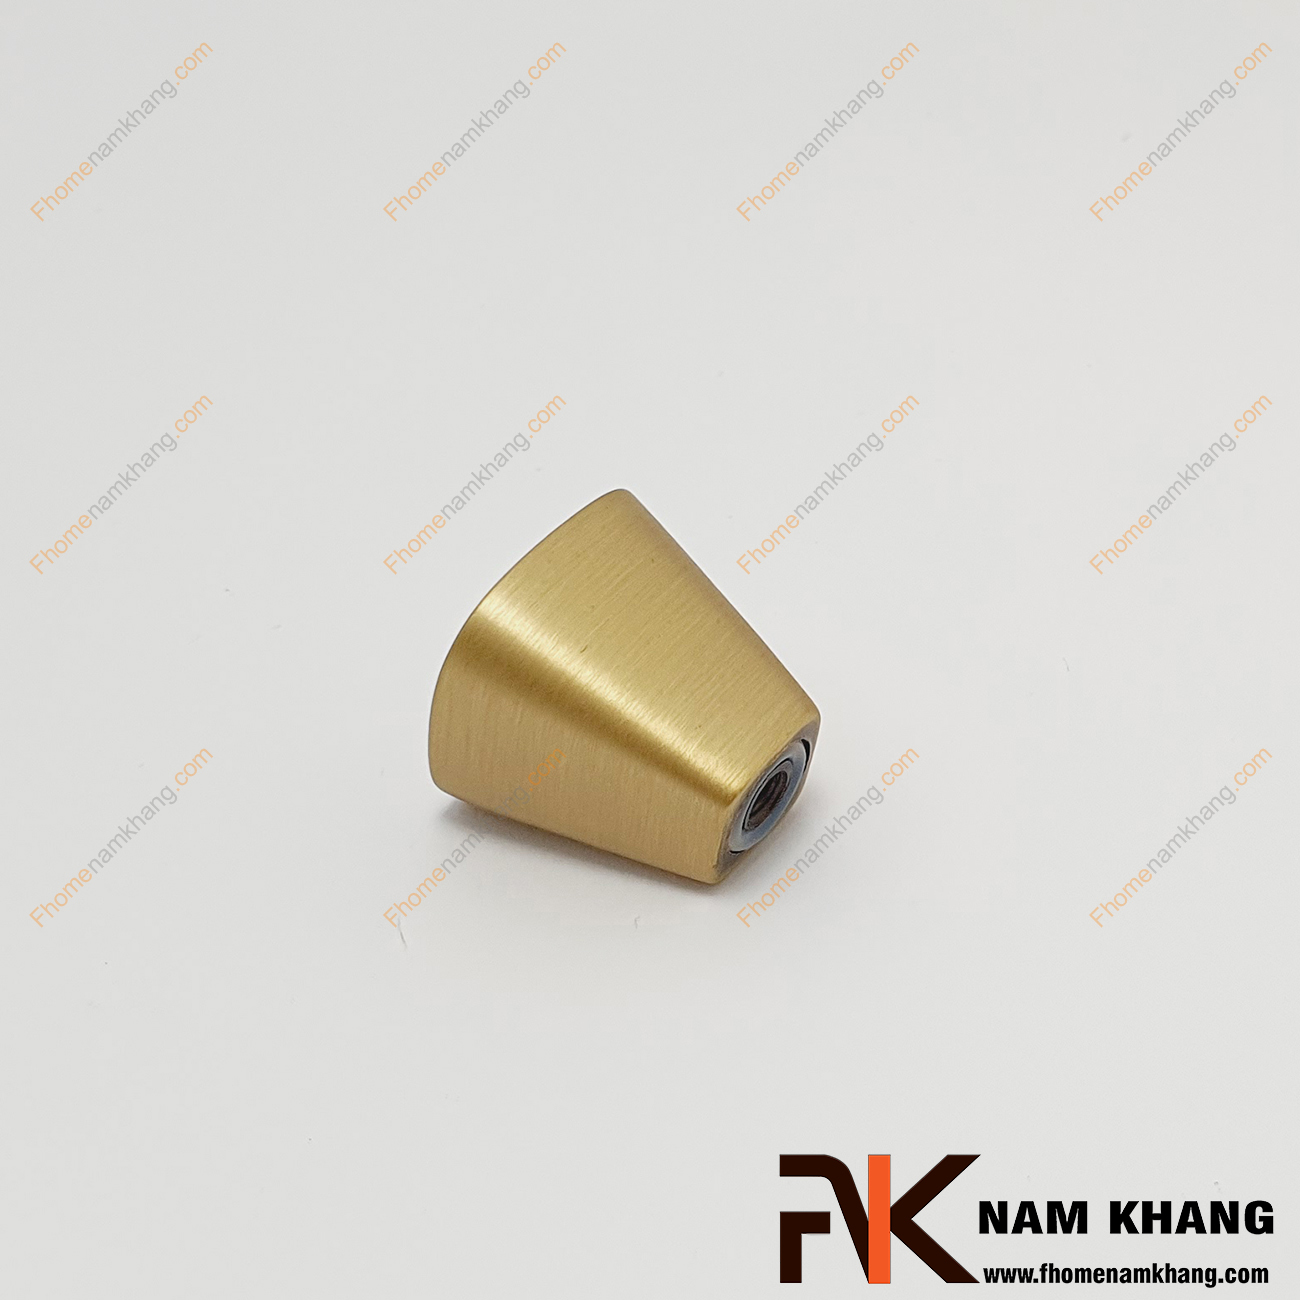 Núm cửa tủ cao cấp bằng đồng NK206A-R, dáng núm tròn trơn màu đồng vàng xước ấn tượng, lắp đặt bằng vít khoan âm cực kỳ an toàn khi sử dụng